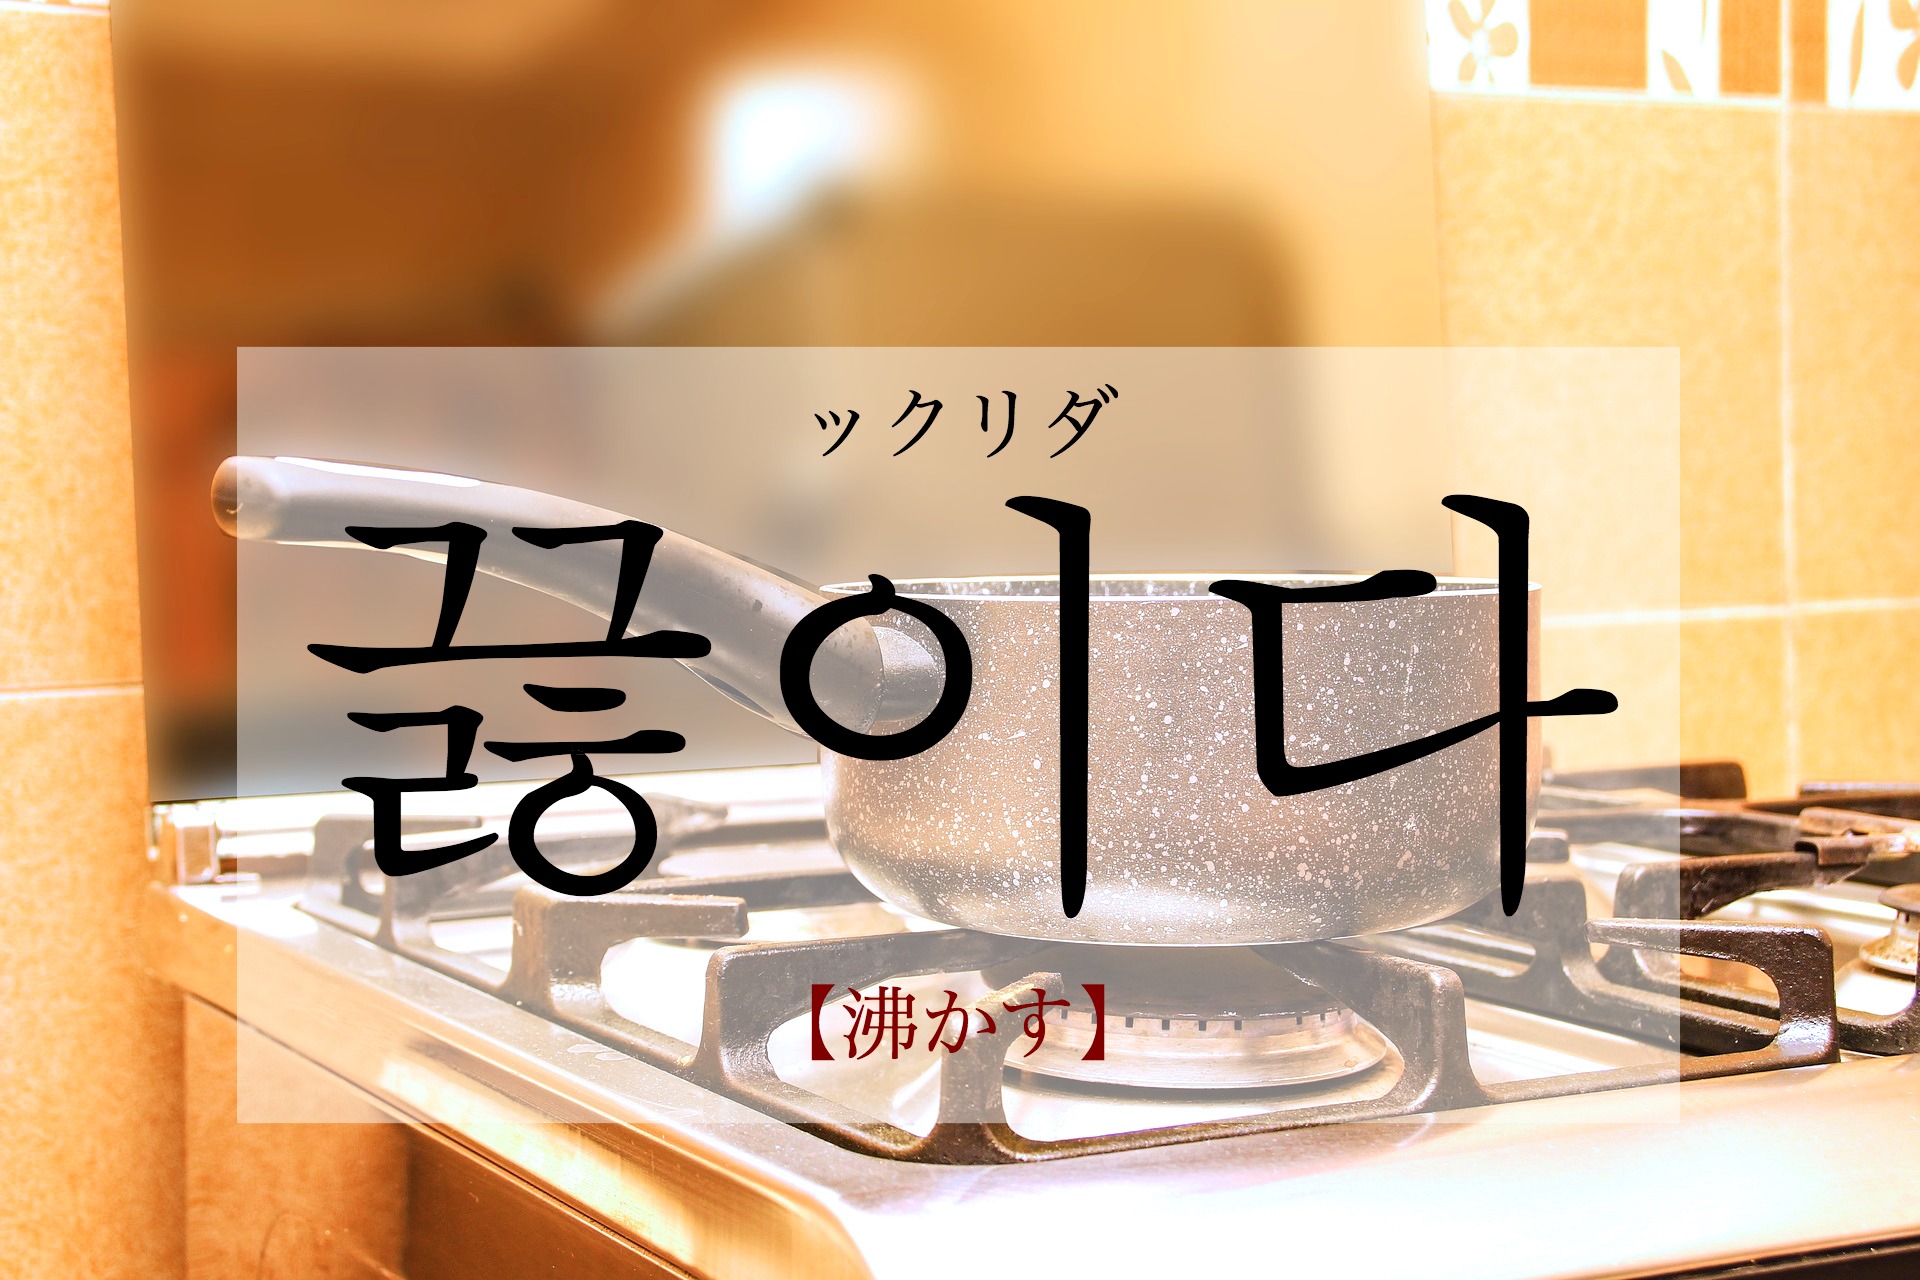 koreanword-boil